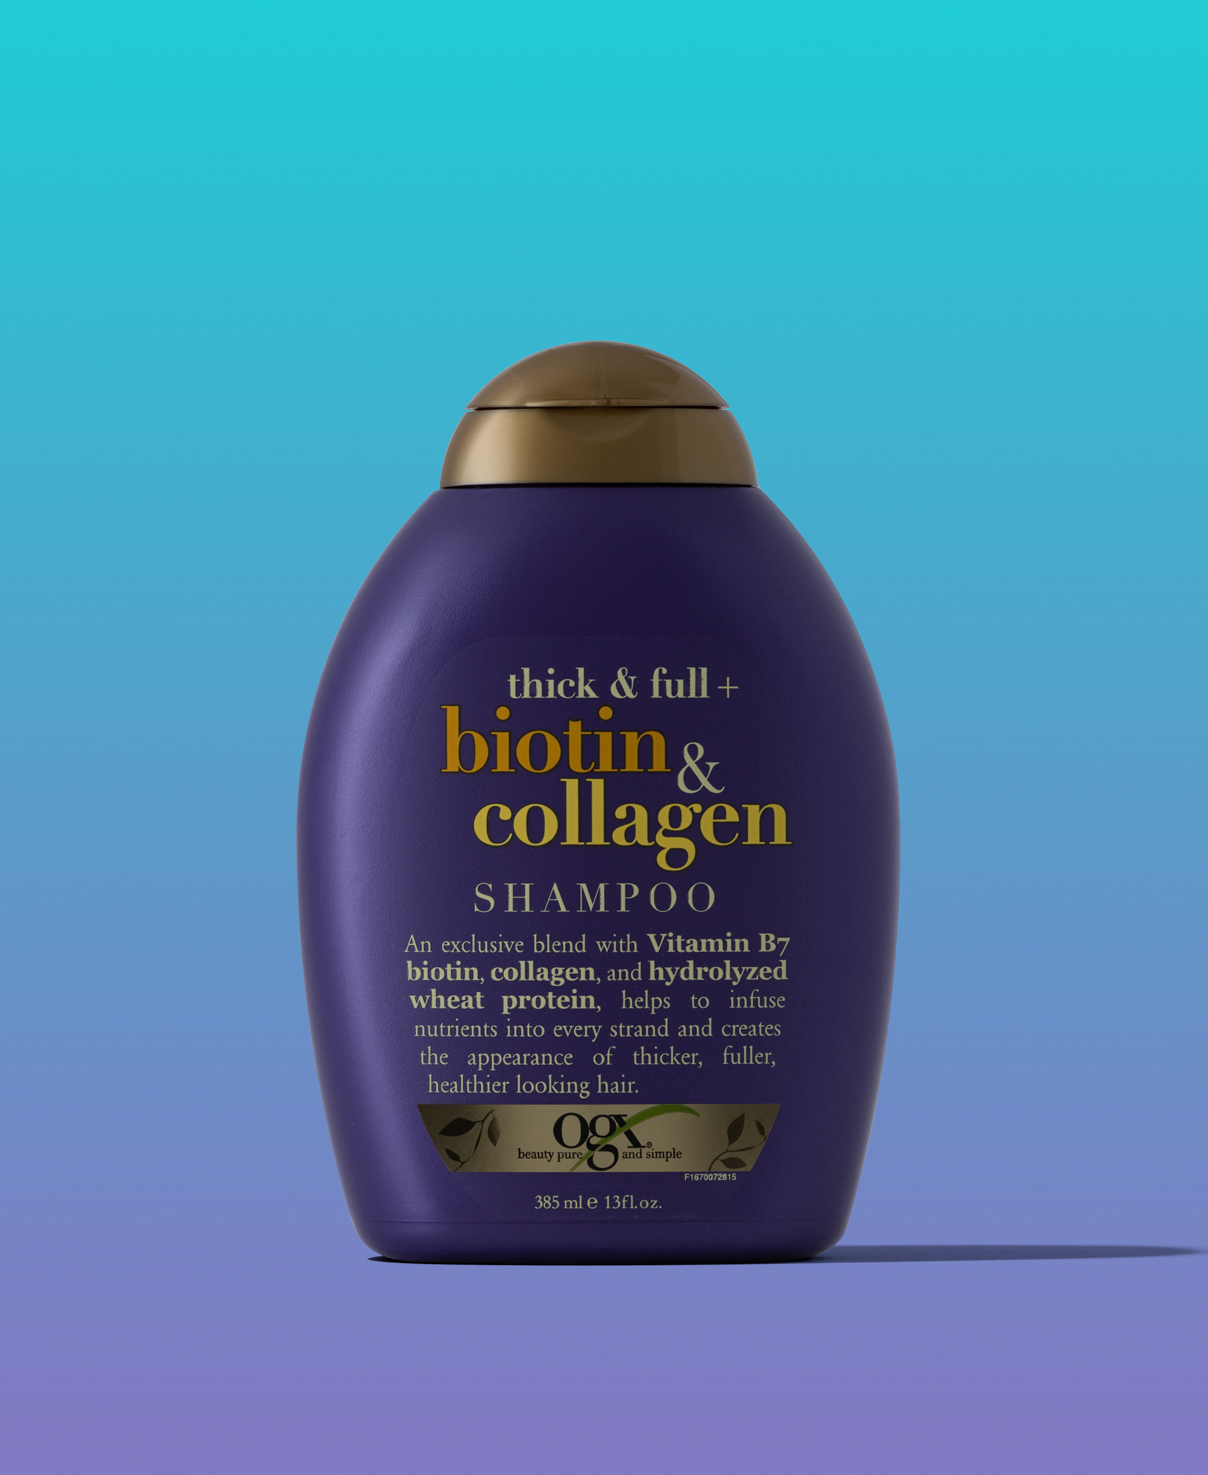 szampon ogx thick & full biotin & collagen rossmann